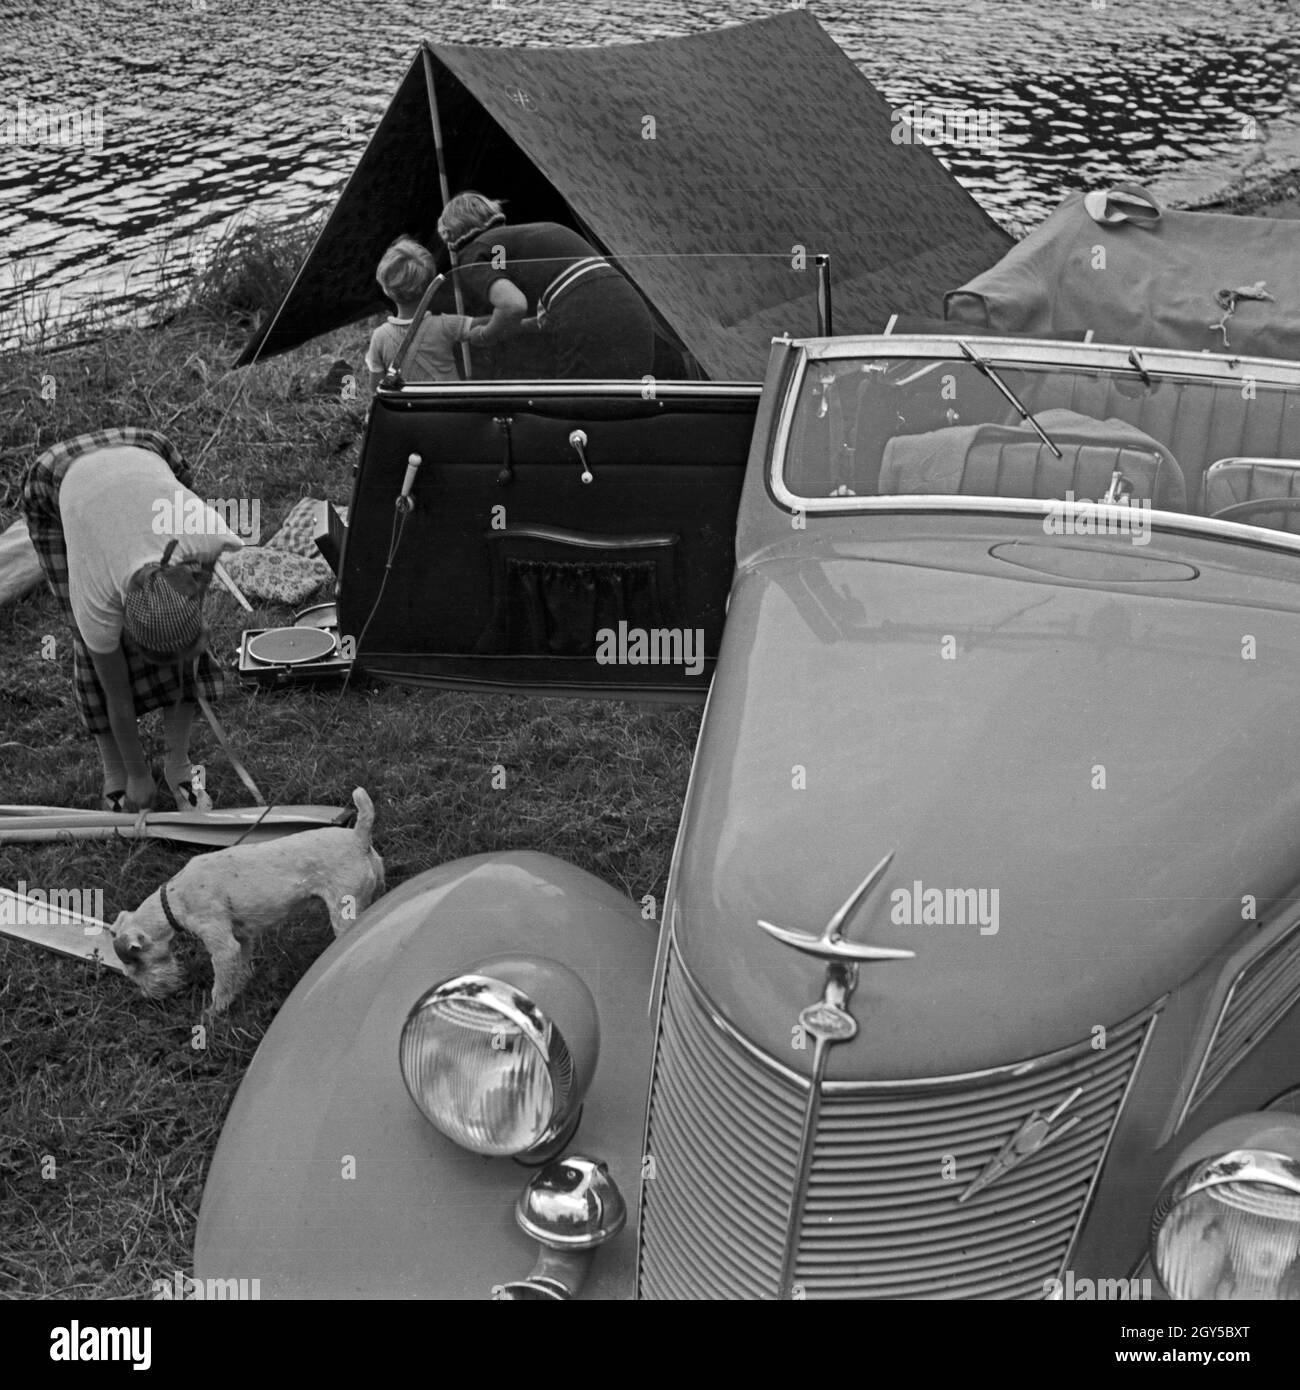 Zwei Frauen die packen Campinausrüstung zusammen dans un Ford V8 nach einem Tag am See, Deutschland 1930 er Jahre. Deux femmes l'emballage du matériel de camping dans une Ford V8 après un jour de vacances au bord d'un lac, l'Allemagne des années 1930. Banque D'Images